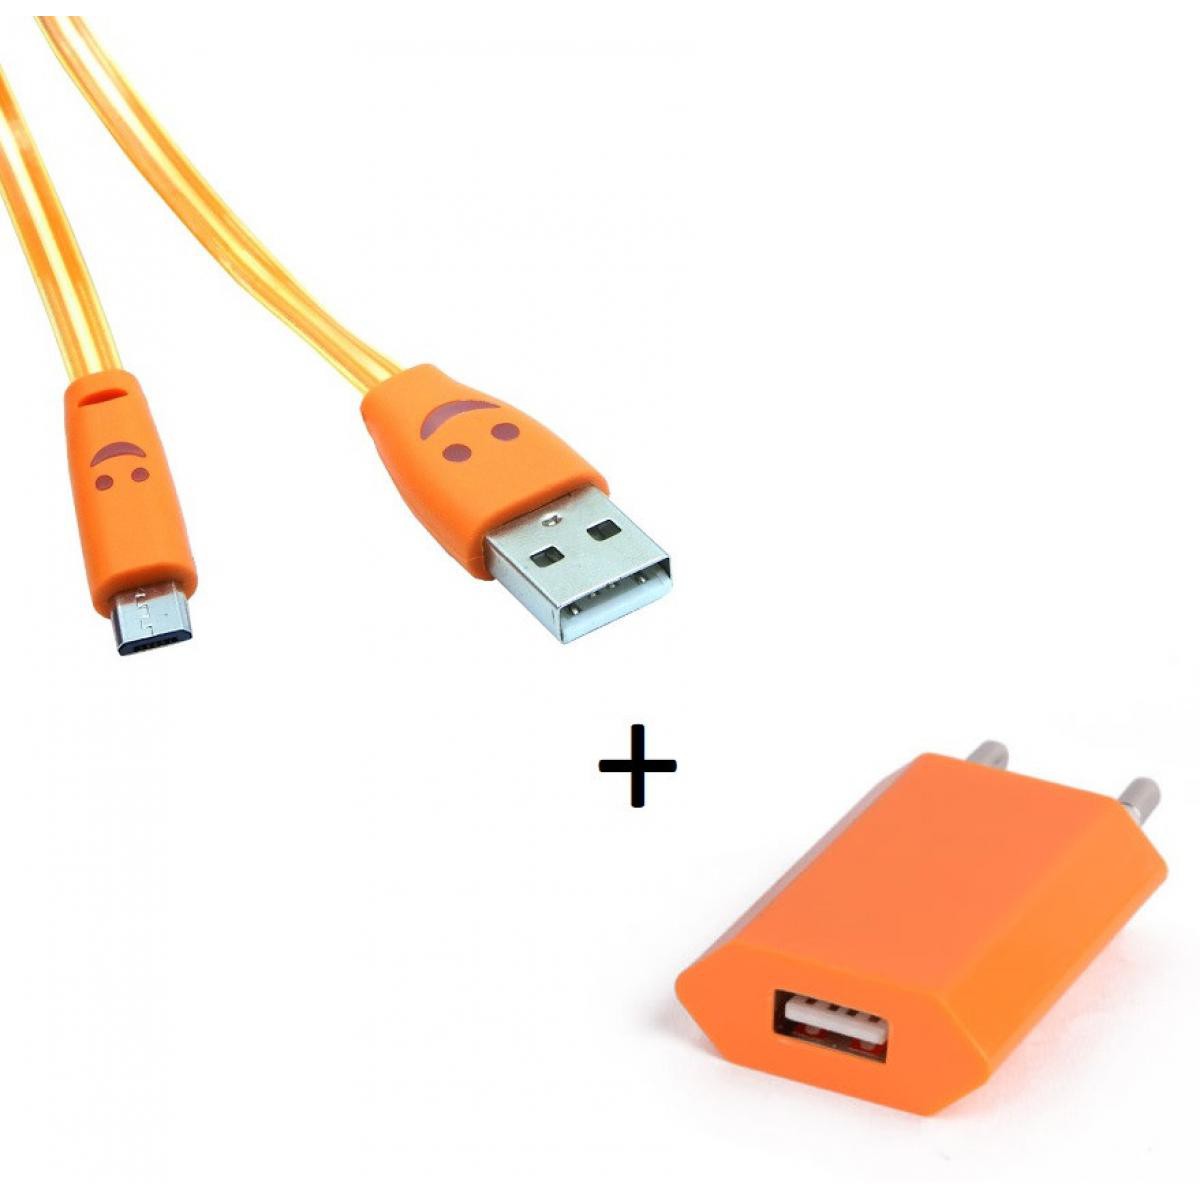 Shot - Pack Chargeur pour JBL GO 2 Smartphone Micro USB (Cable Smiley LED + Prise Secteur USB) Android (ORANGE) - Chargeur secteur téléphone